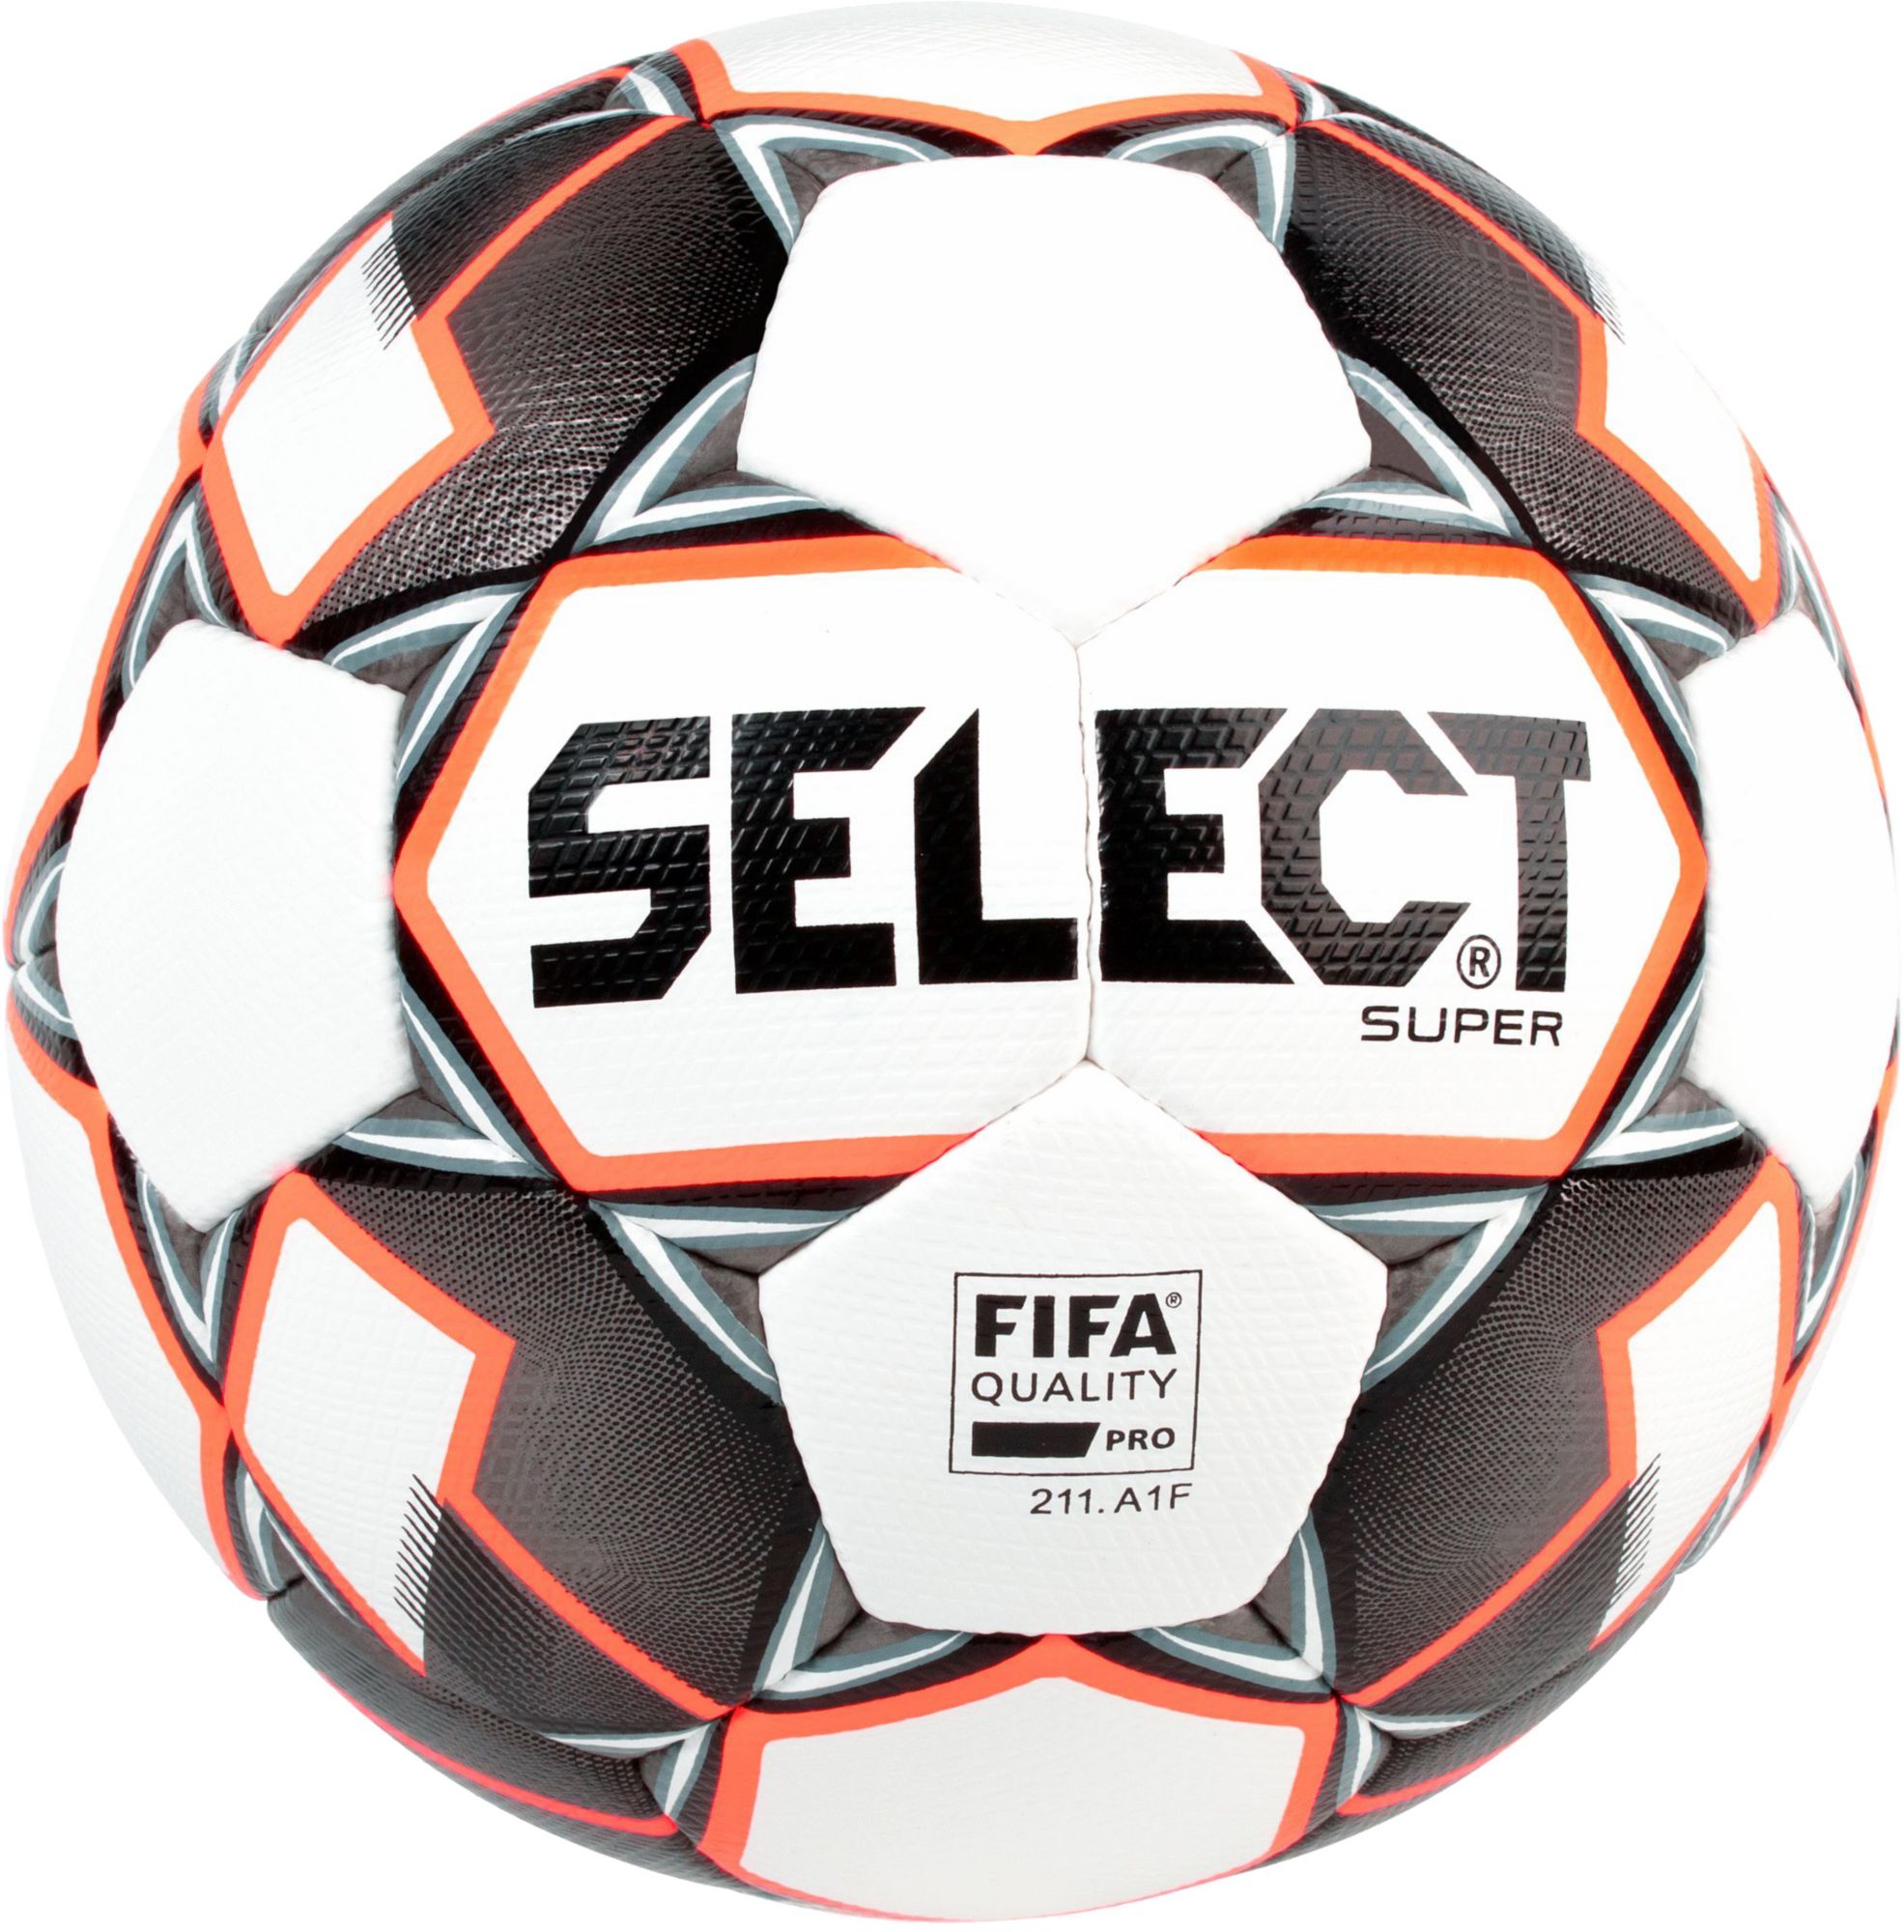 fifa official ball